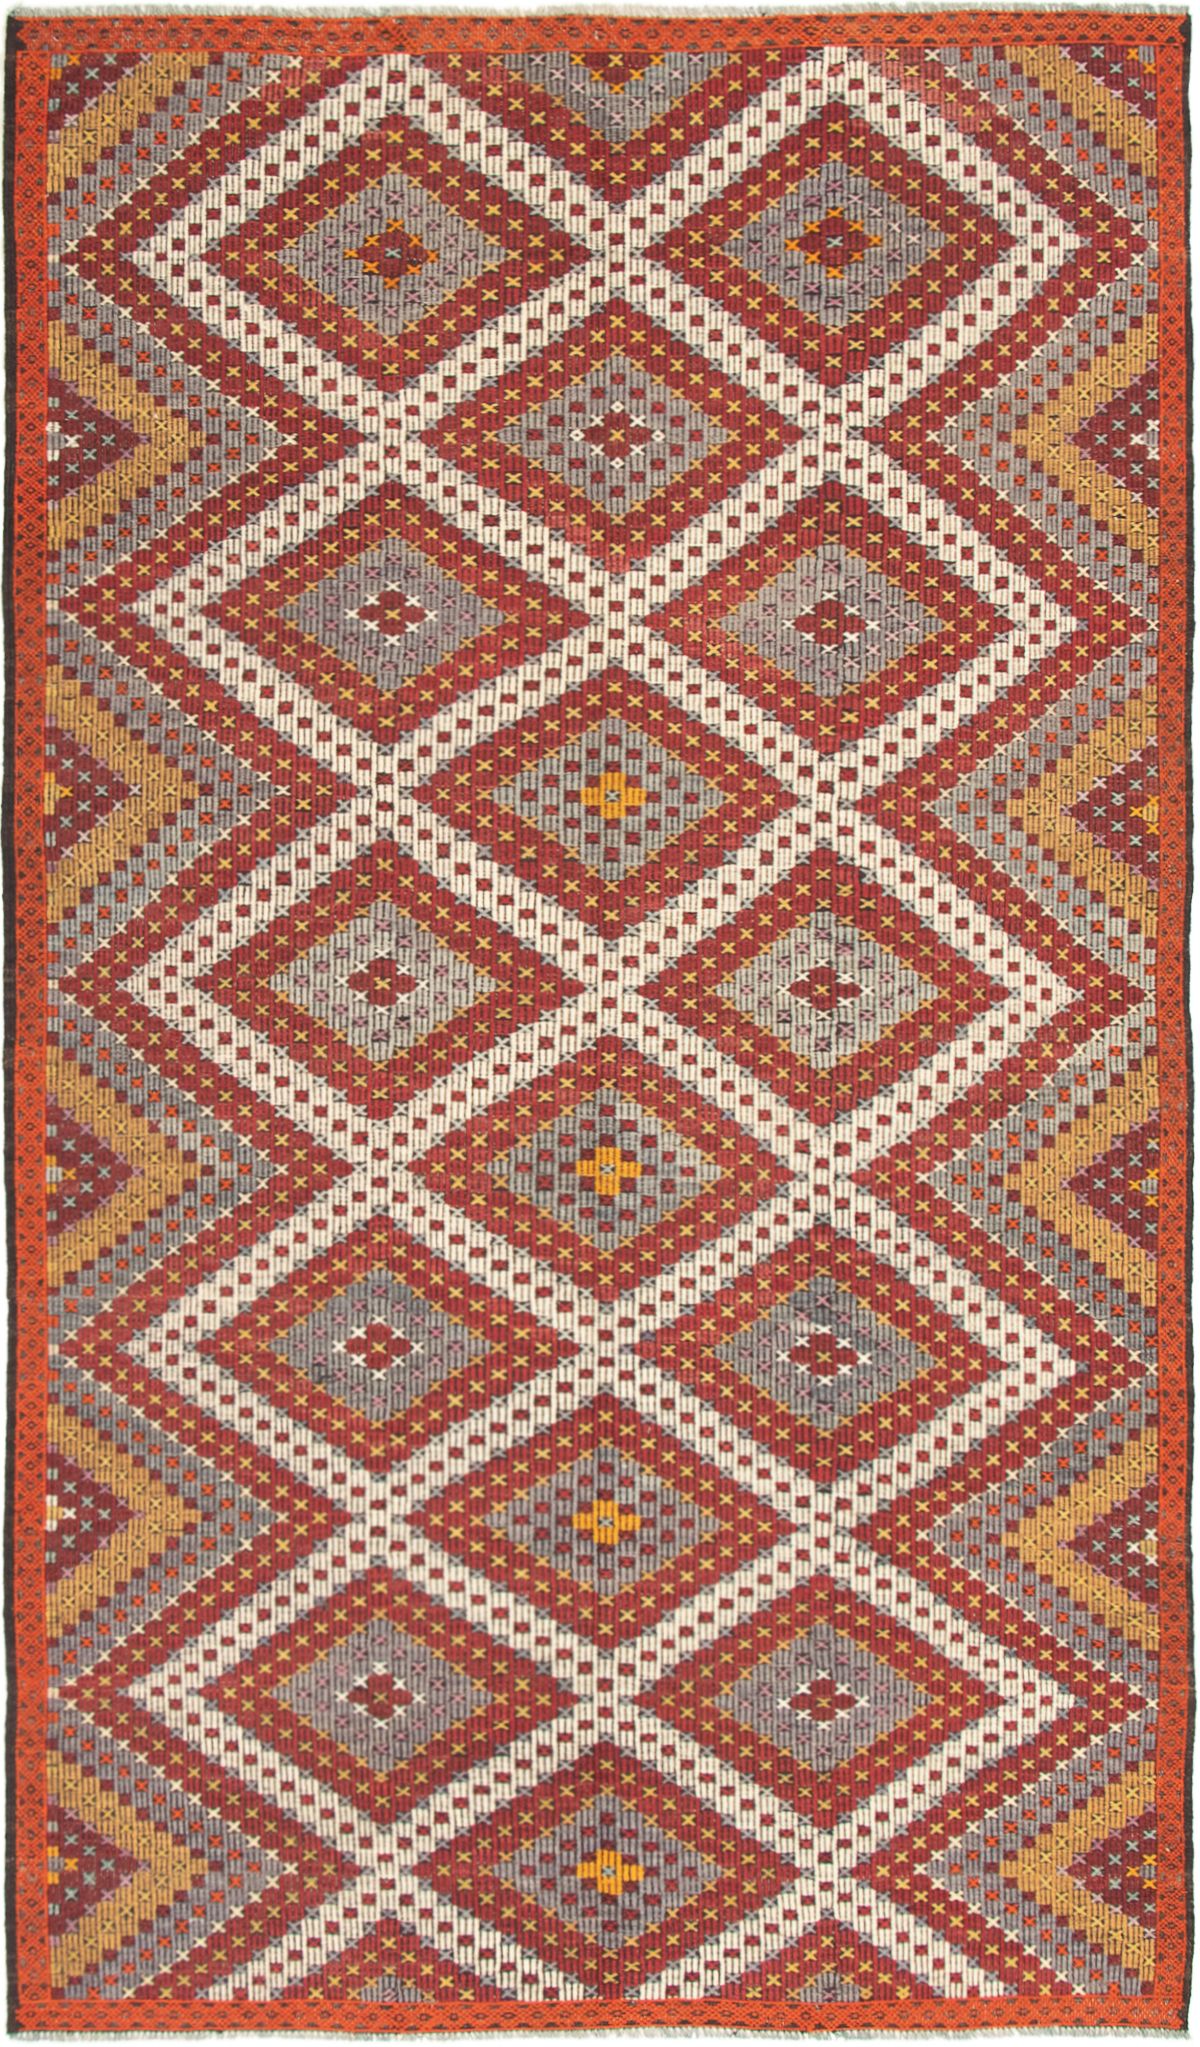 Hand woven Yoruk Cream, Dark Red Wool Tapestry Kilim 6'4" x 10'10" Size: 6'4" x 10'10"  